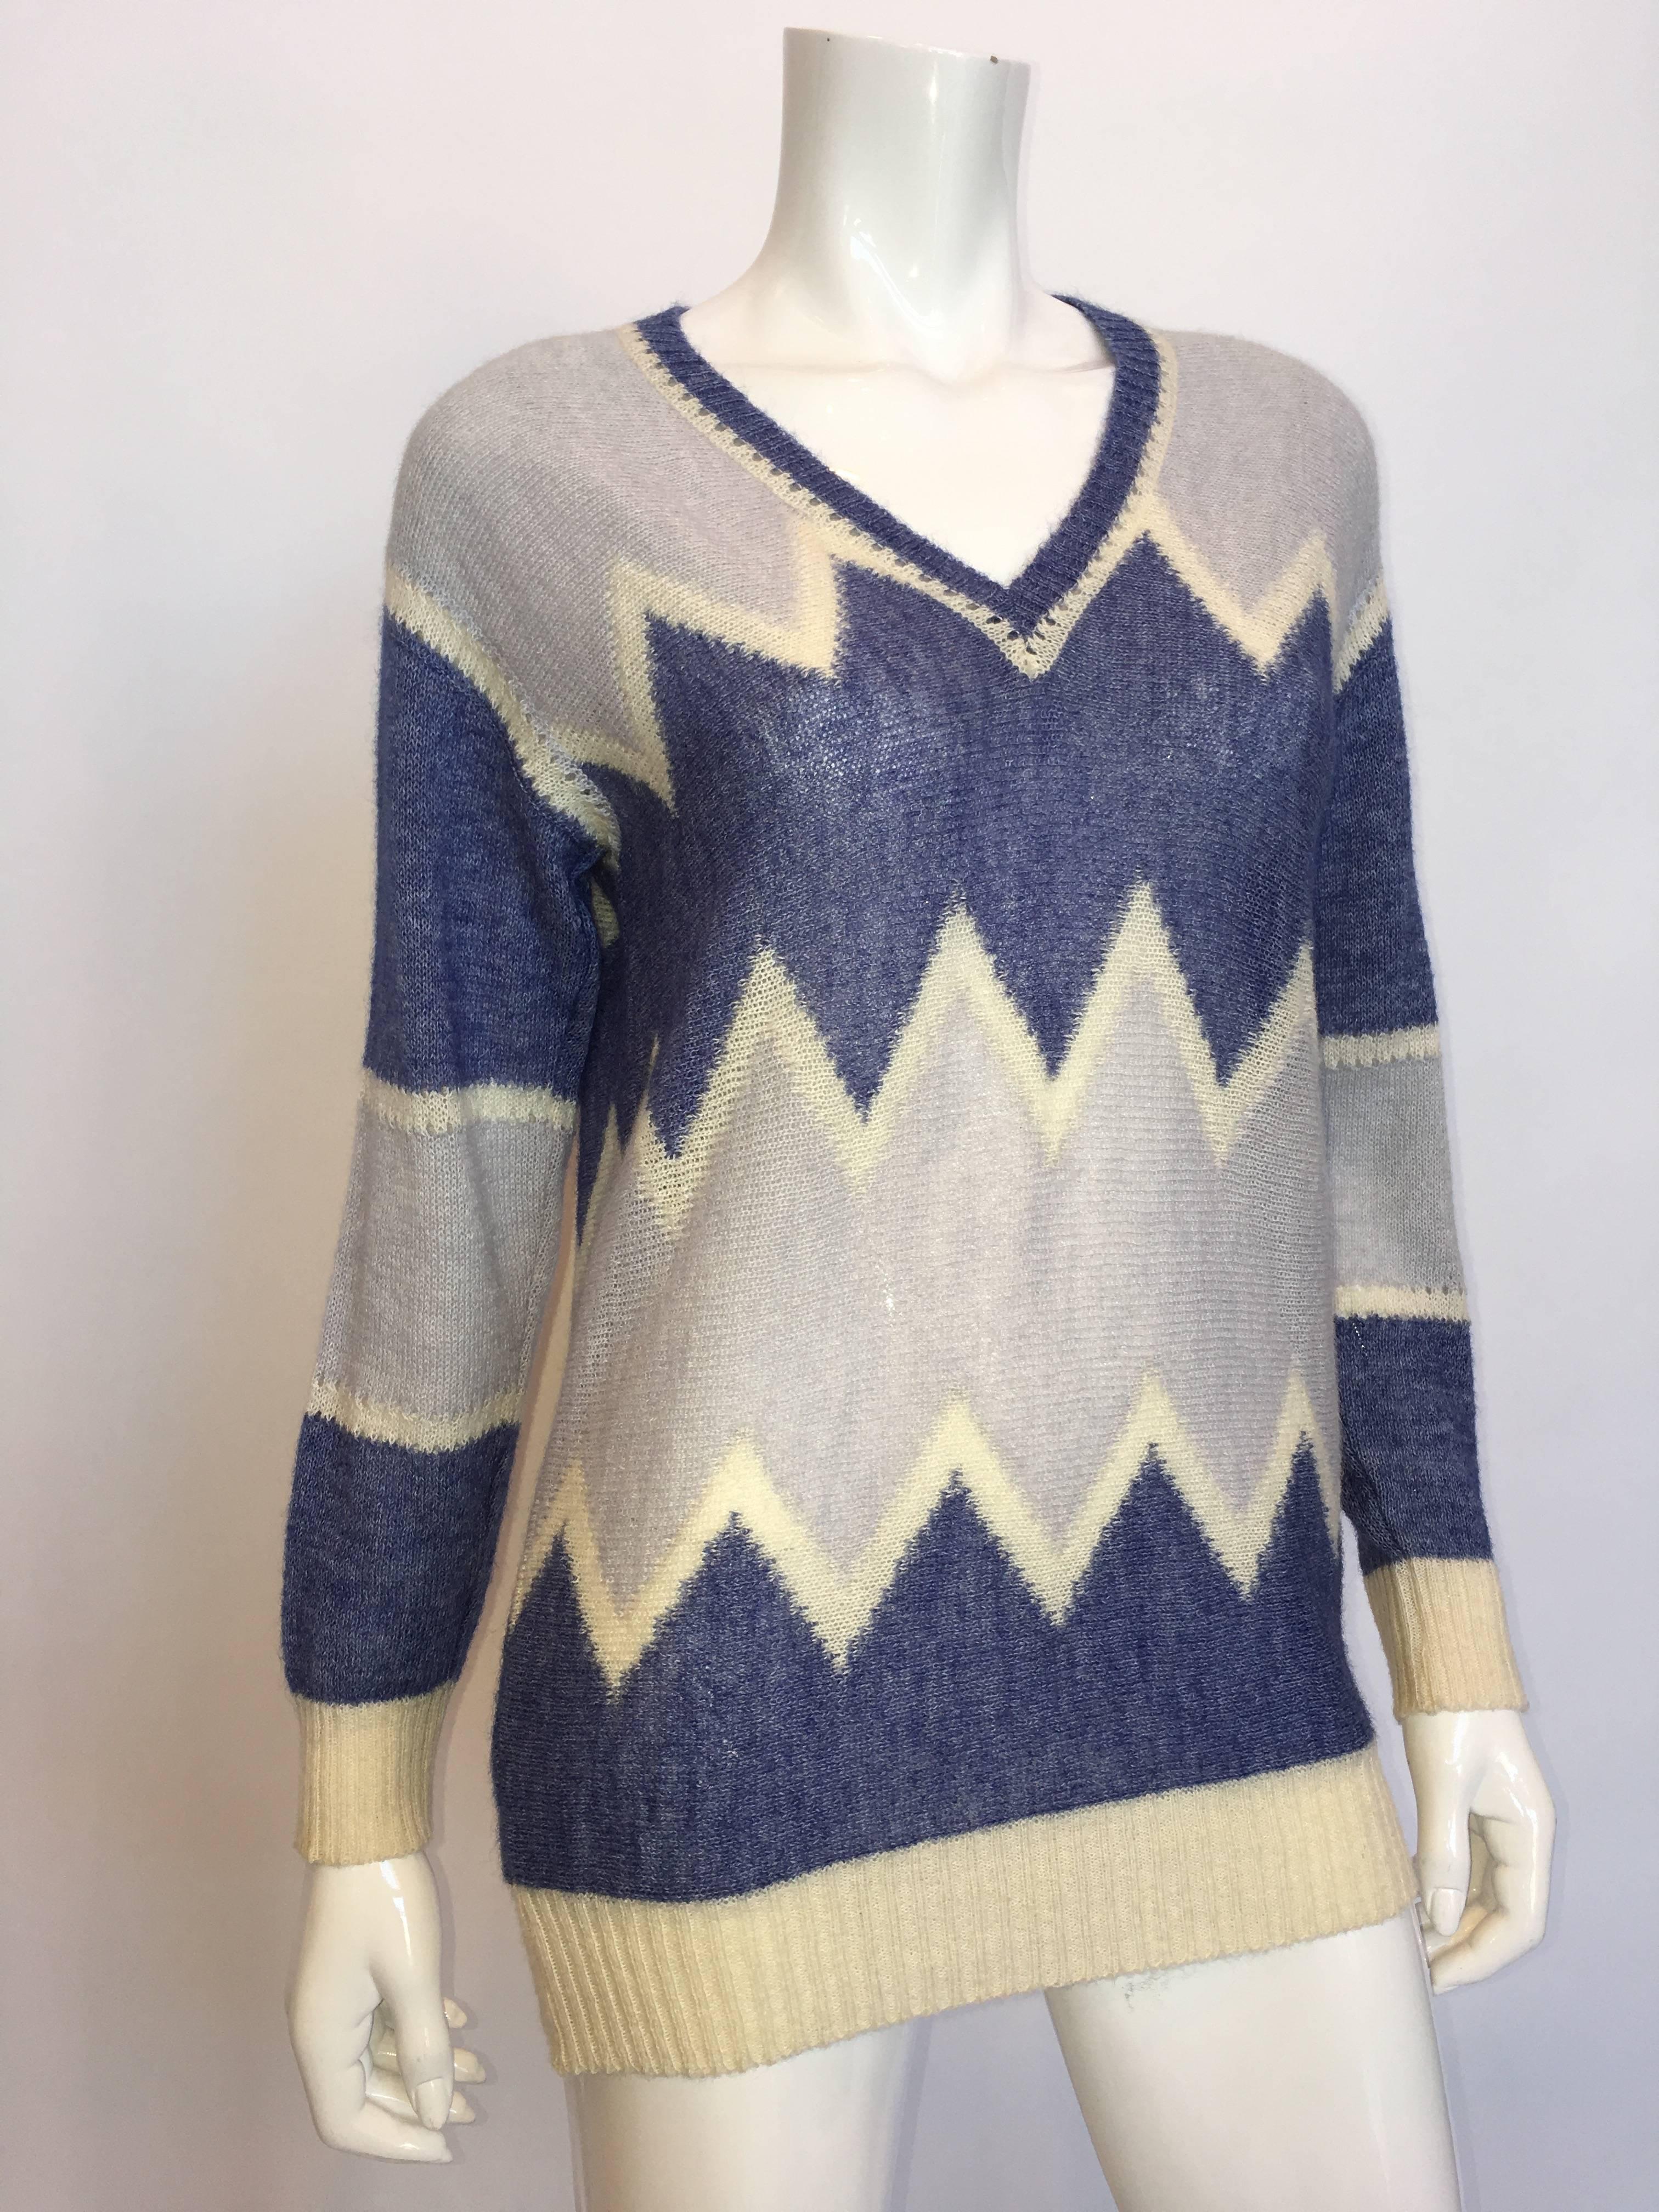 Courrèges Paris 1970's Mohair Sweater

*ALL MEASUREMENTS TAKEN FLAT*

Shoulder to shoulder: 18